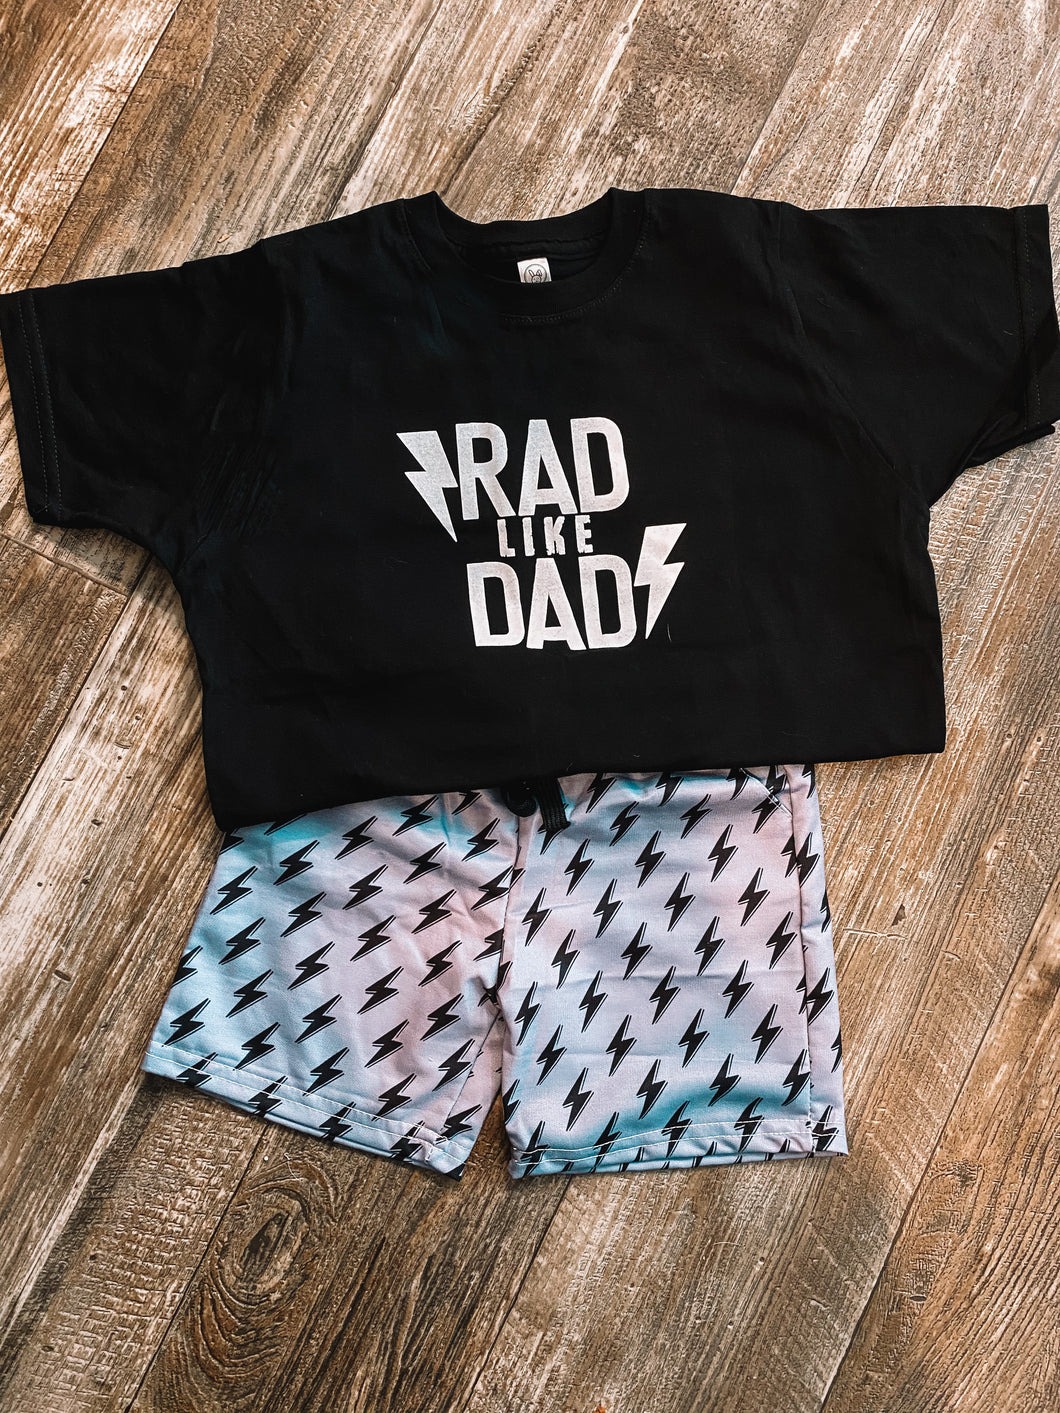 Rad like Dad tee